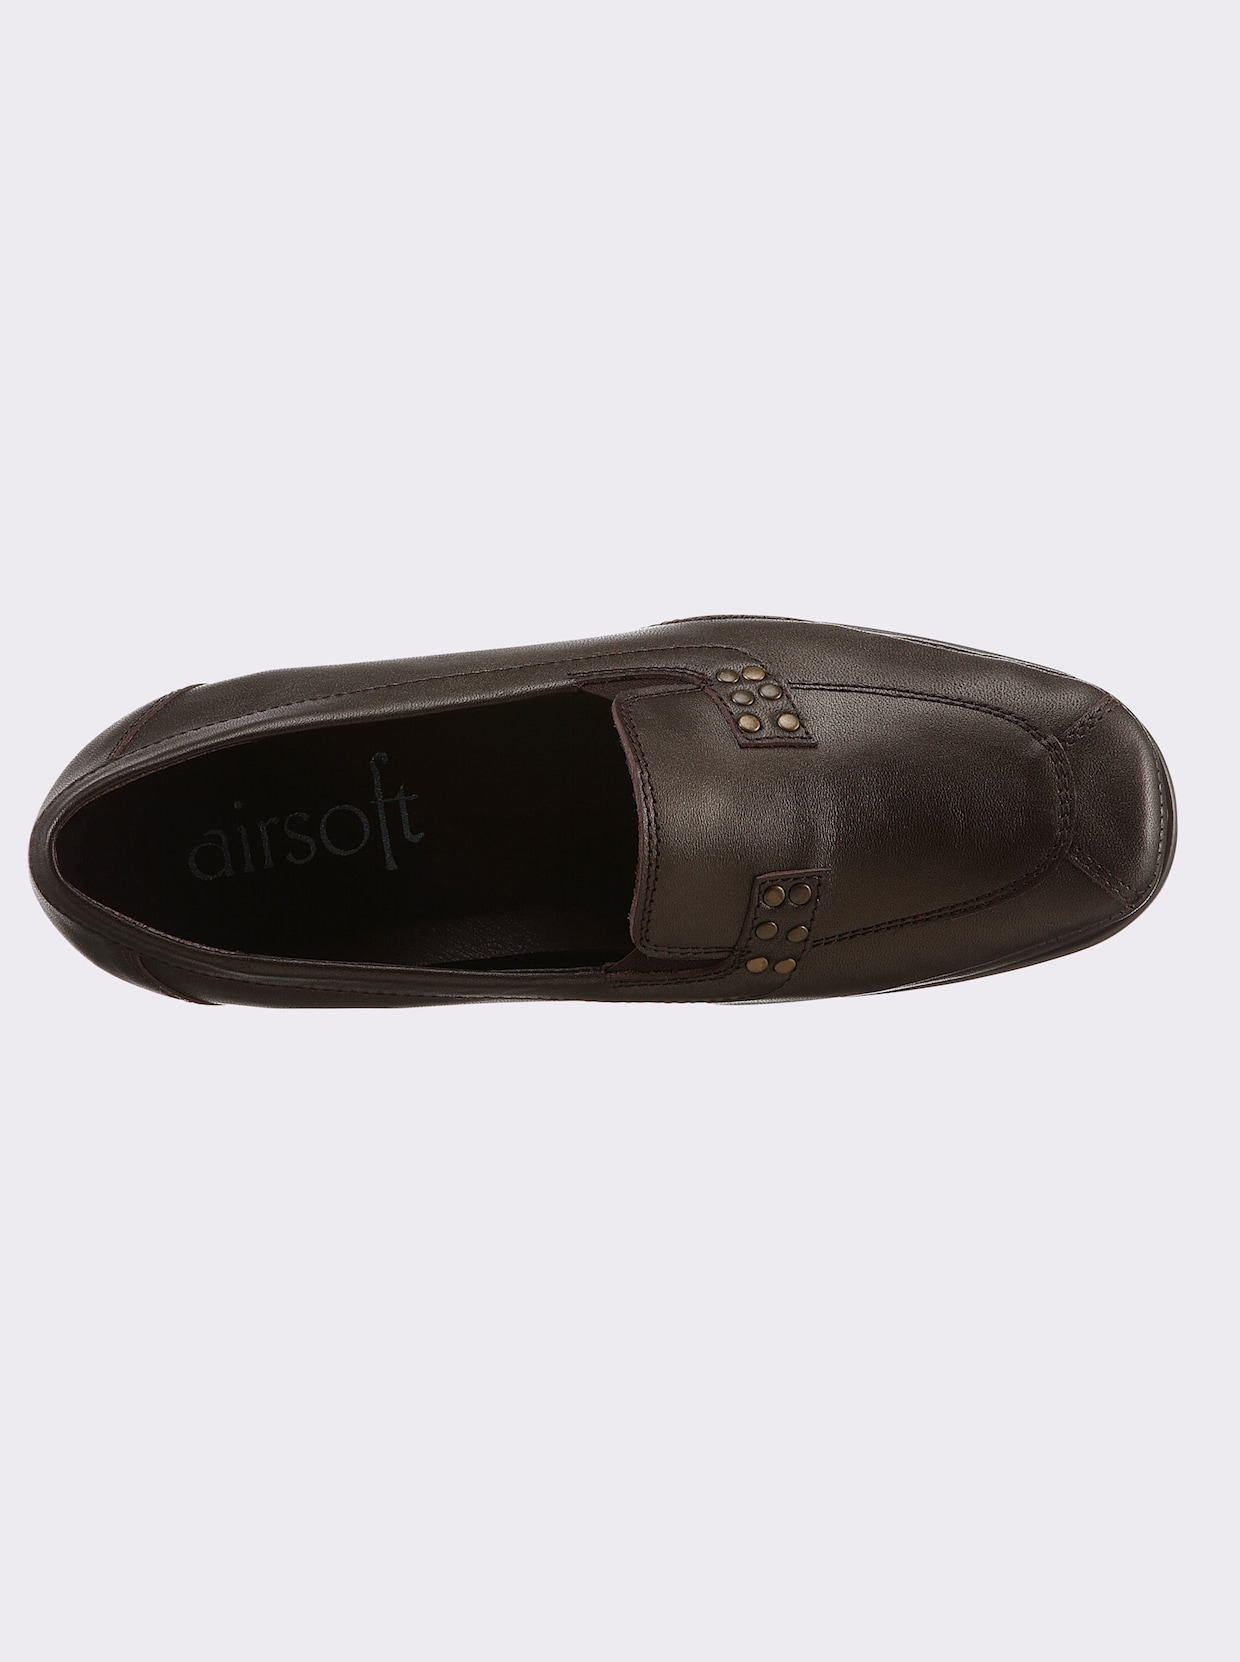 airsoft comfort+ Slipper - bronzefarben